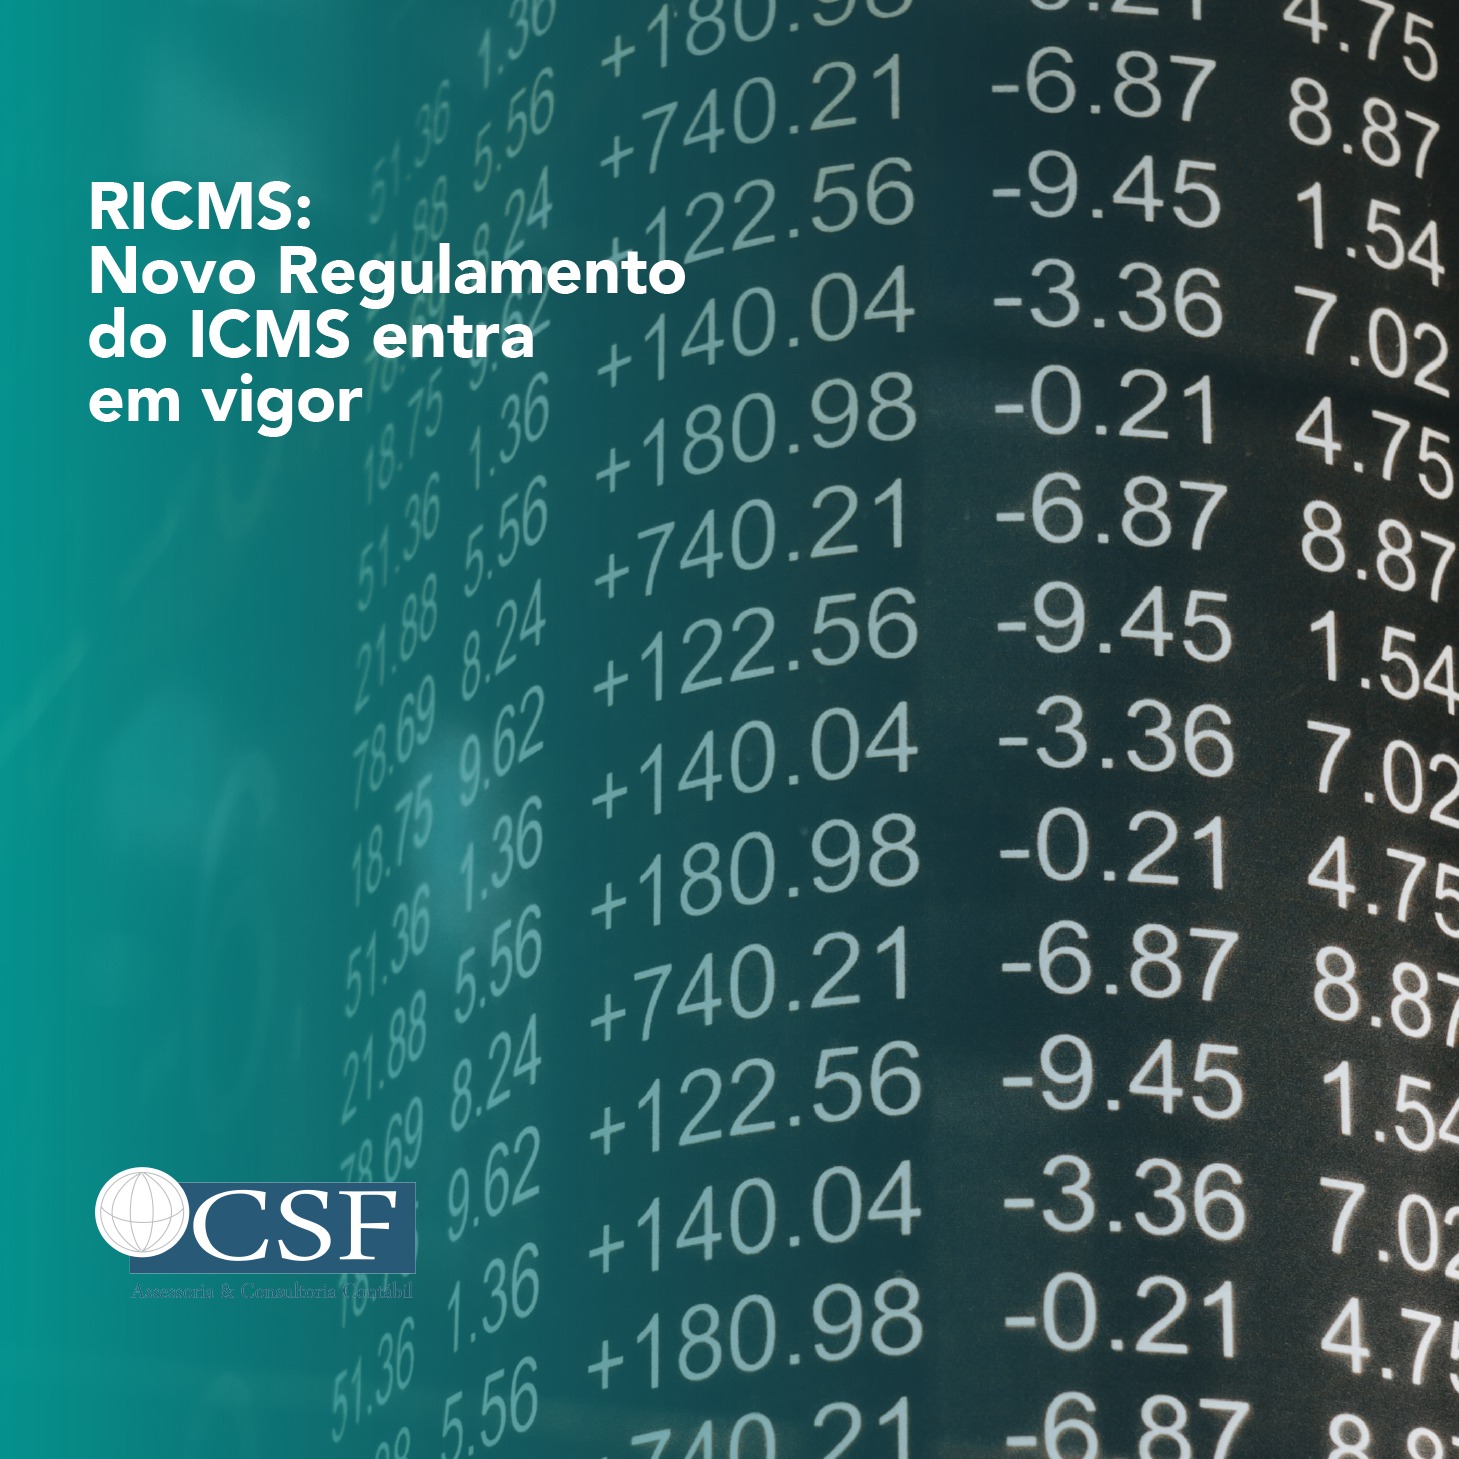 RICMS: Novo Regulamento do ICMS entra em vigor